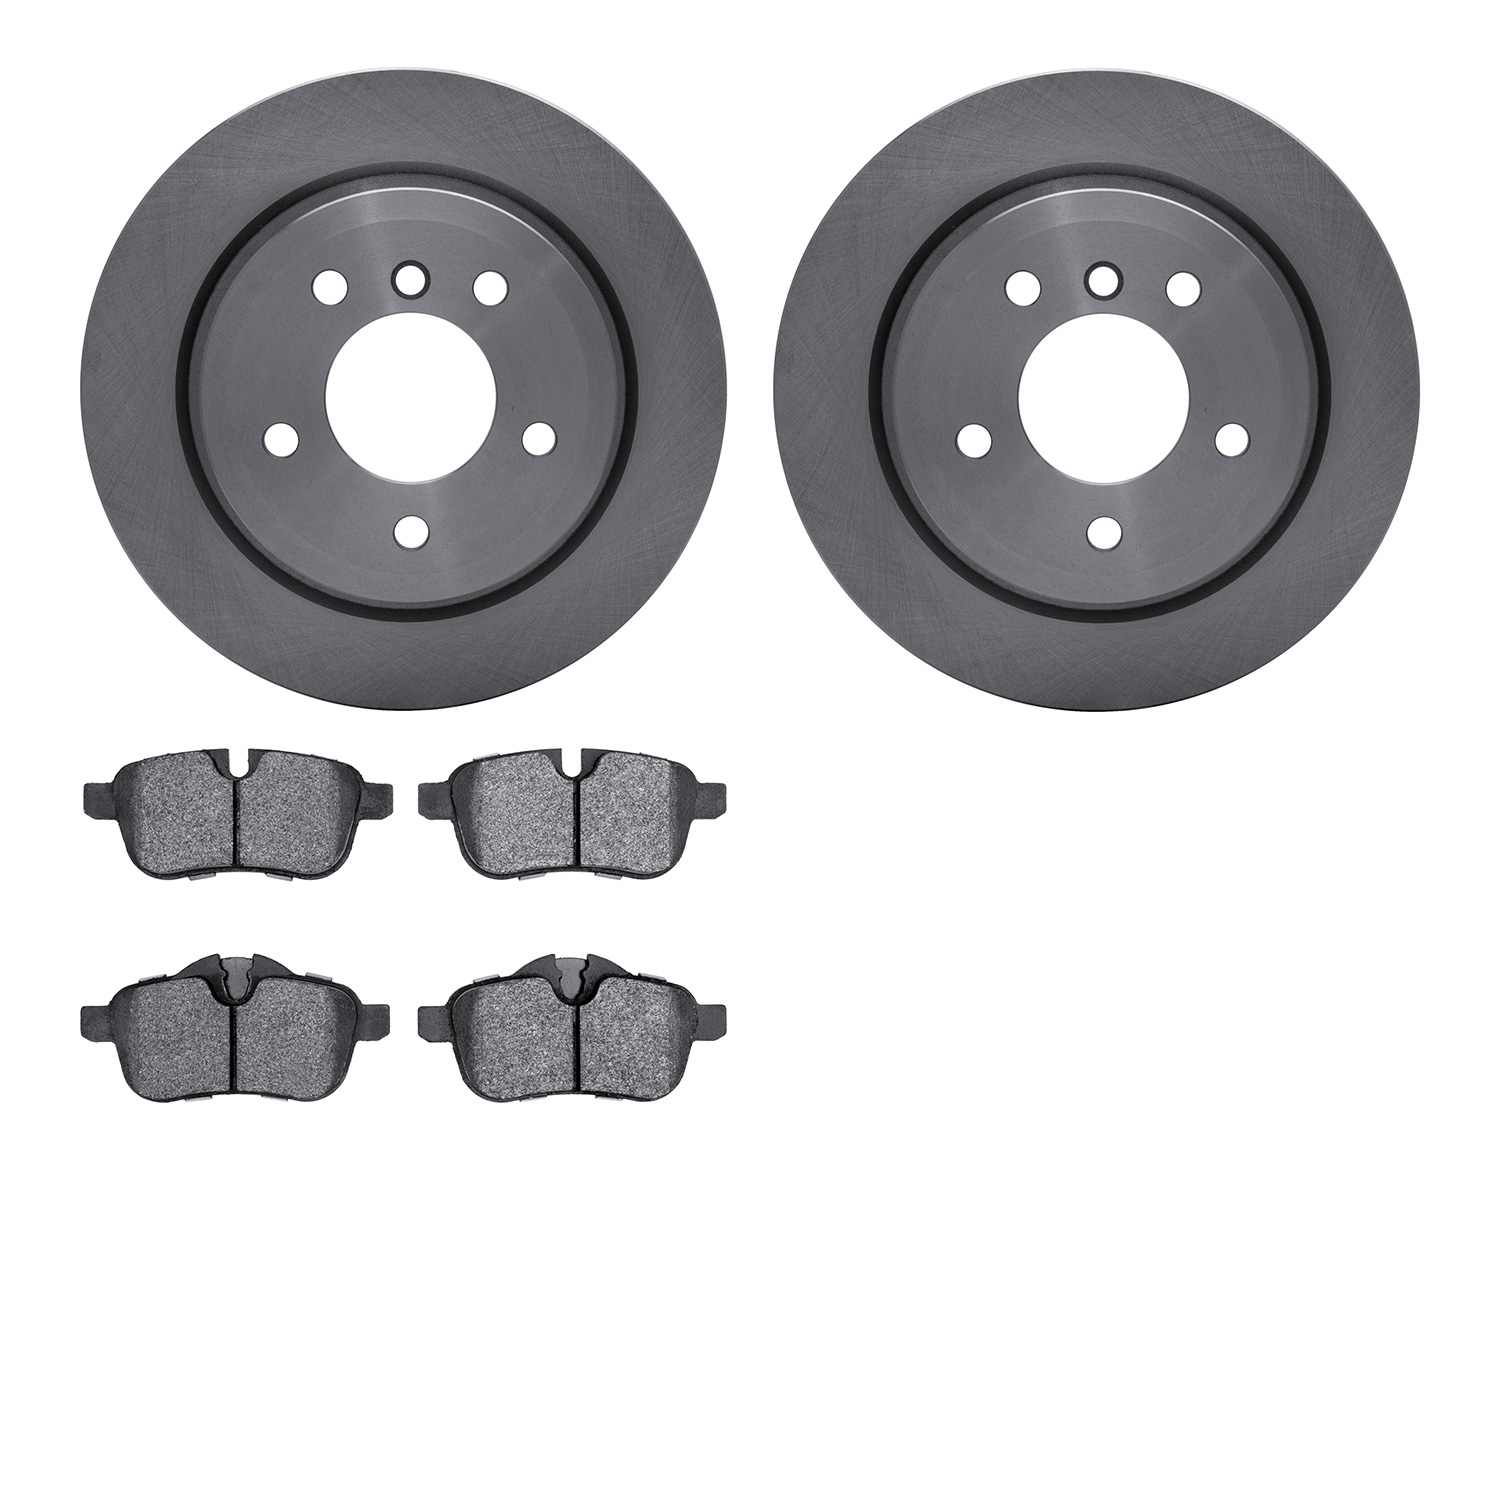 6502-31515 Brake Rotors w/5000 Advanced Brake Pads Kit, 2011-2016 BMW, Position: Rear